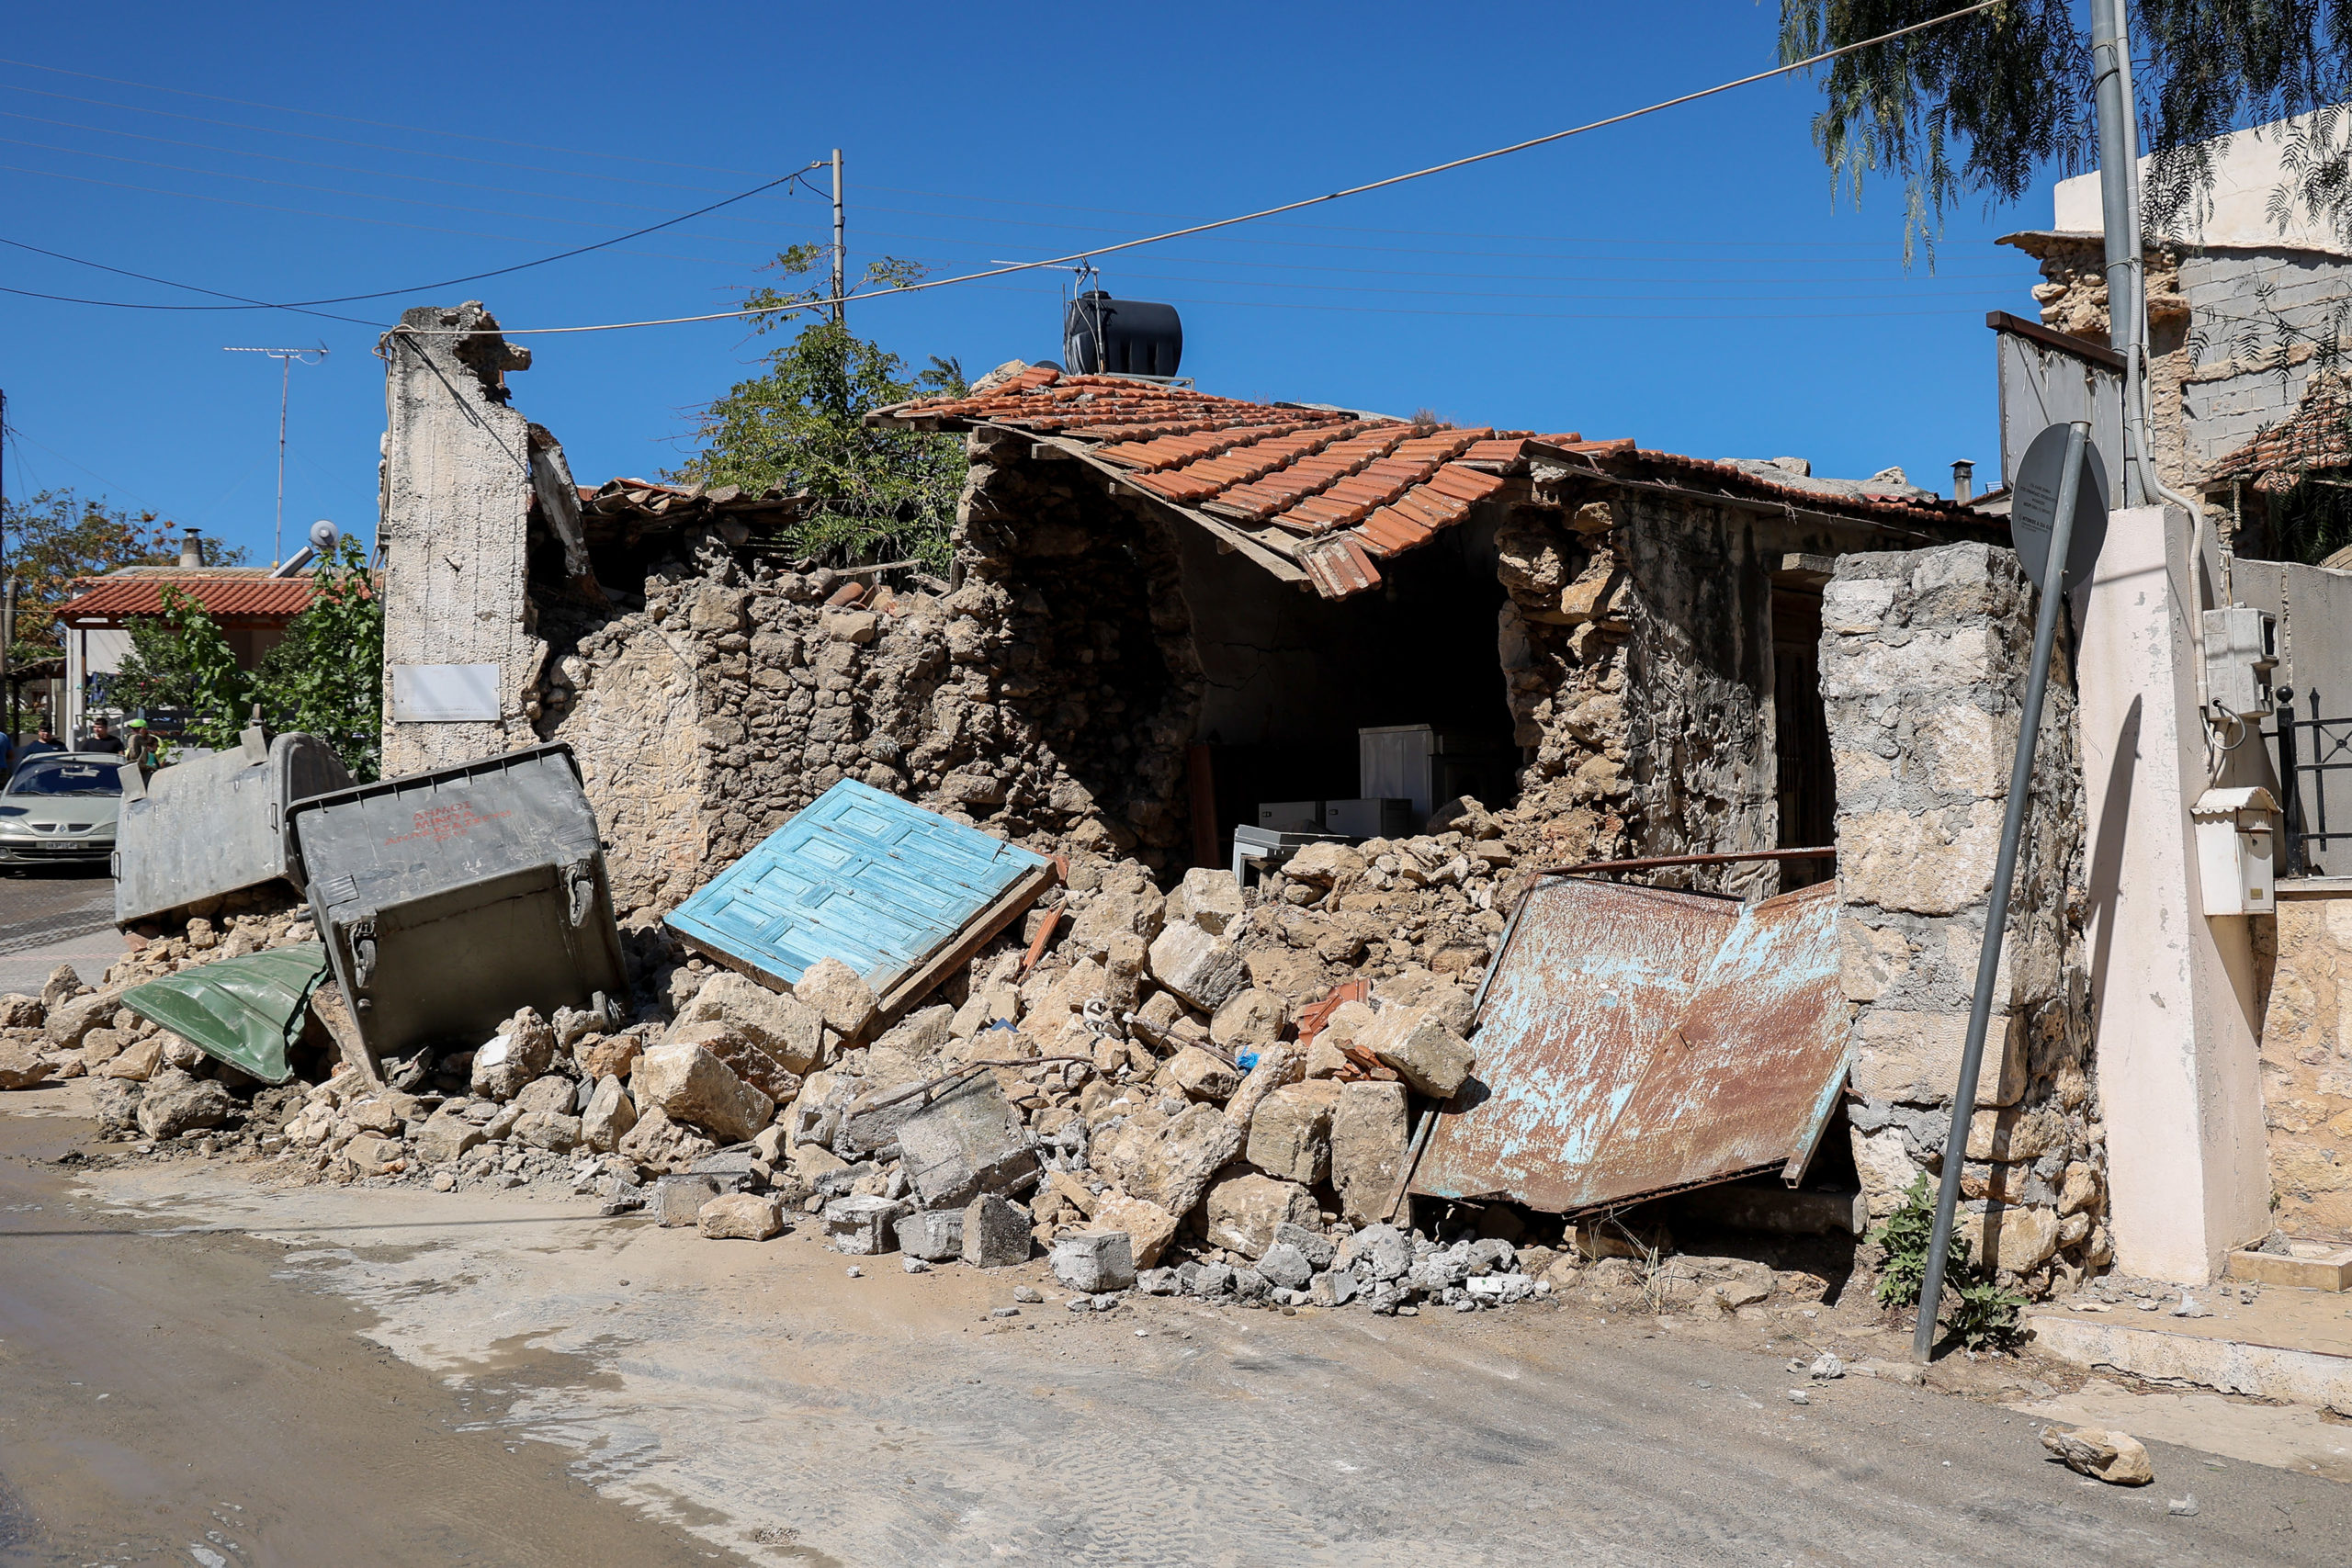 Ισχυρή σεισμική δόνηση μεγέθους 5,8 βαθμών της κλίμακας Ρίχτερ σημειώθηκε στην περιοχή του Ηράκλειου Κρήτης.Το επίκεντρο του σεισμού, ήταν 5χλμ στο Αρκαλοχώρι, όπου υπάρχουν μεγάλες καταστροφές.Κατάρρευση εκκλησίας, νεκρός ένας εργάτης, Δευτέρα 27 Σεπτεμβρίου 2021 
(ΣΤΕΦΑΝΟΣ ΡΑΠΑΝΗΣ/ EUROKINISSI)